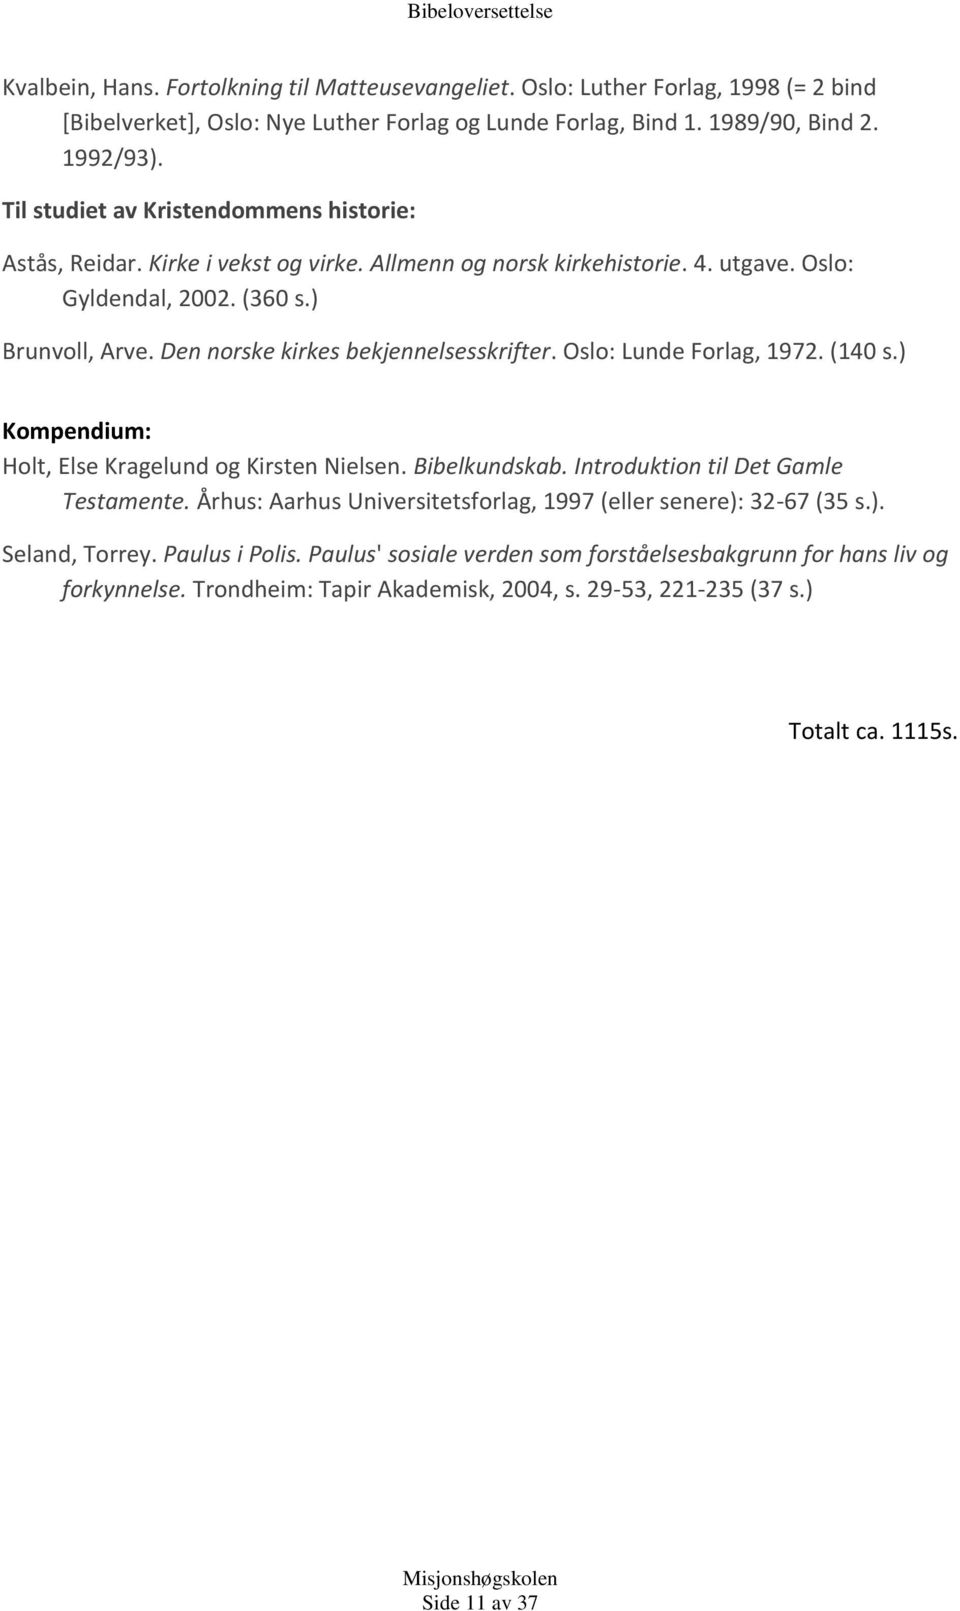 Den norske kirkes bekjennelsesskrifter. Oslo: Lunde Forlag, 1972. (140 s.) Kompendium: Holt, Else Kragelund og Kirsten Nielsen. Bibelkundskab. Introduktion til Det Gamle Testamente.